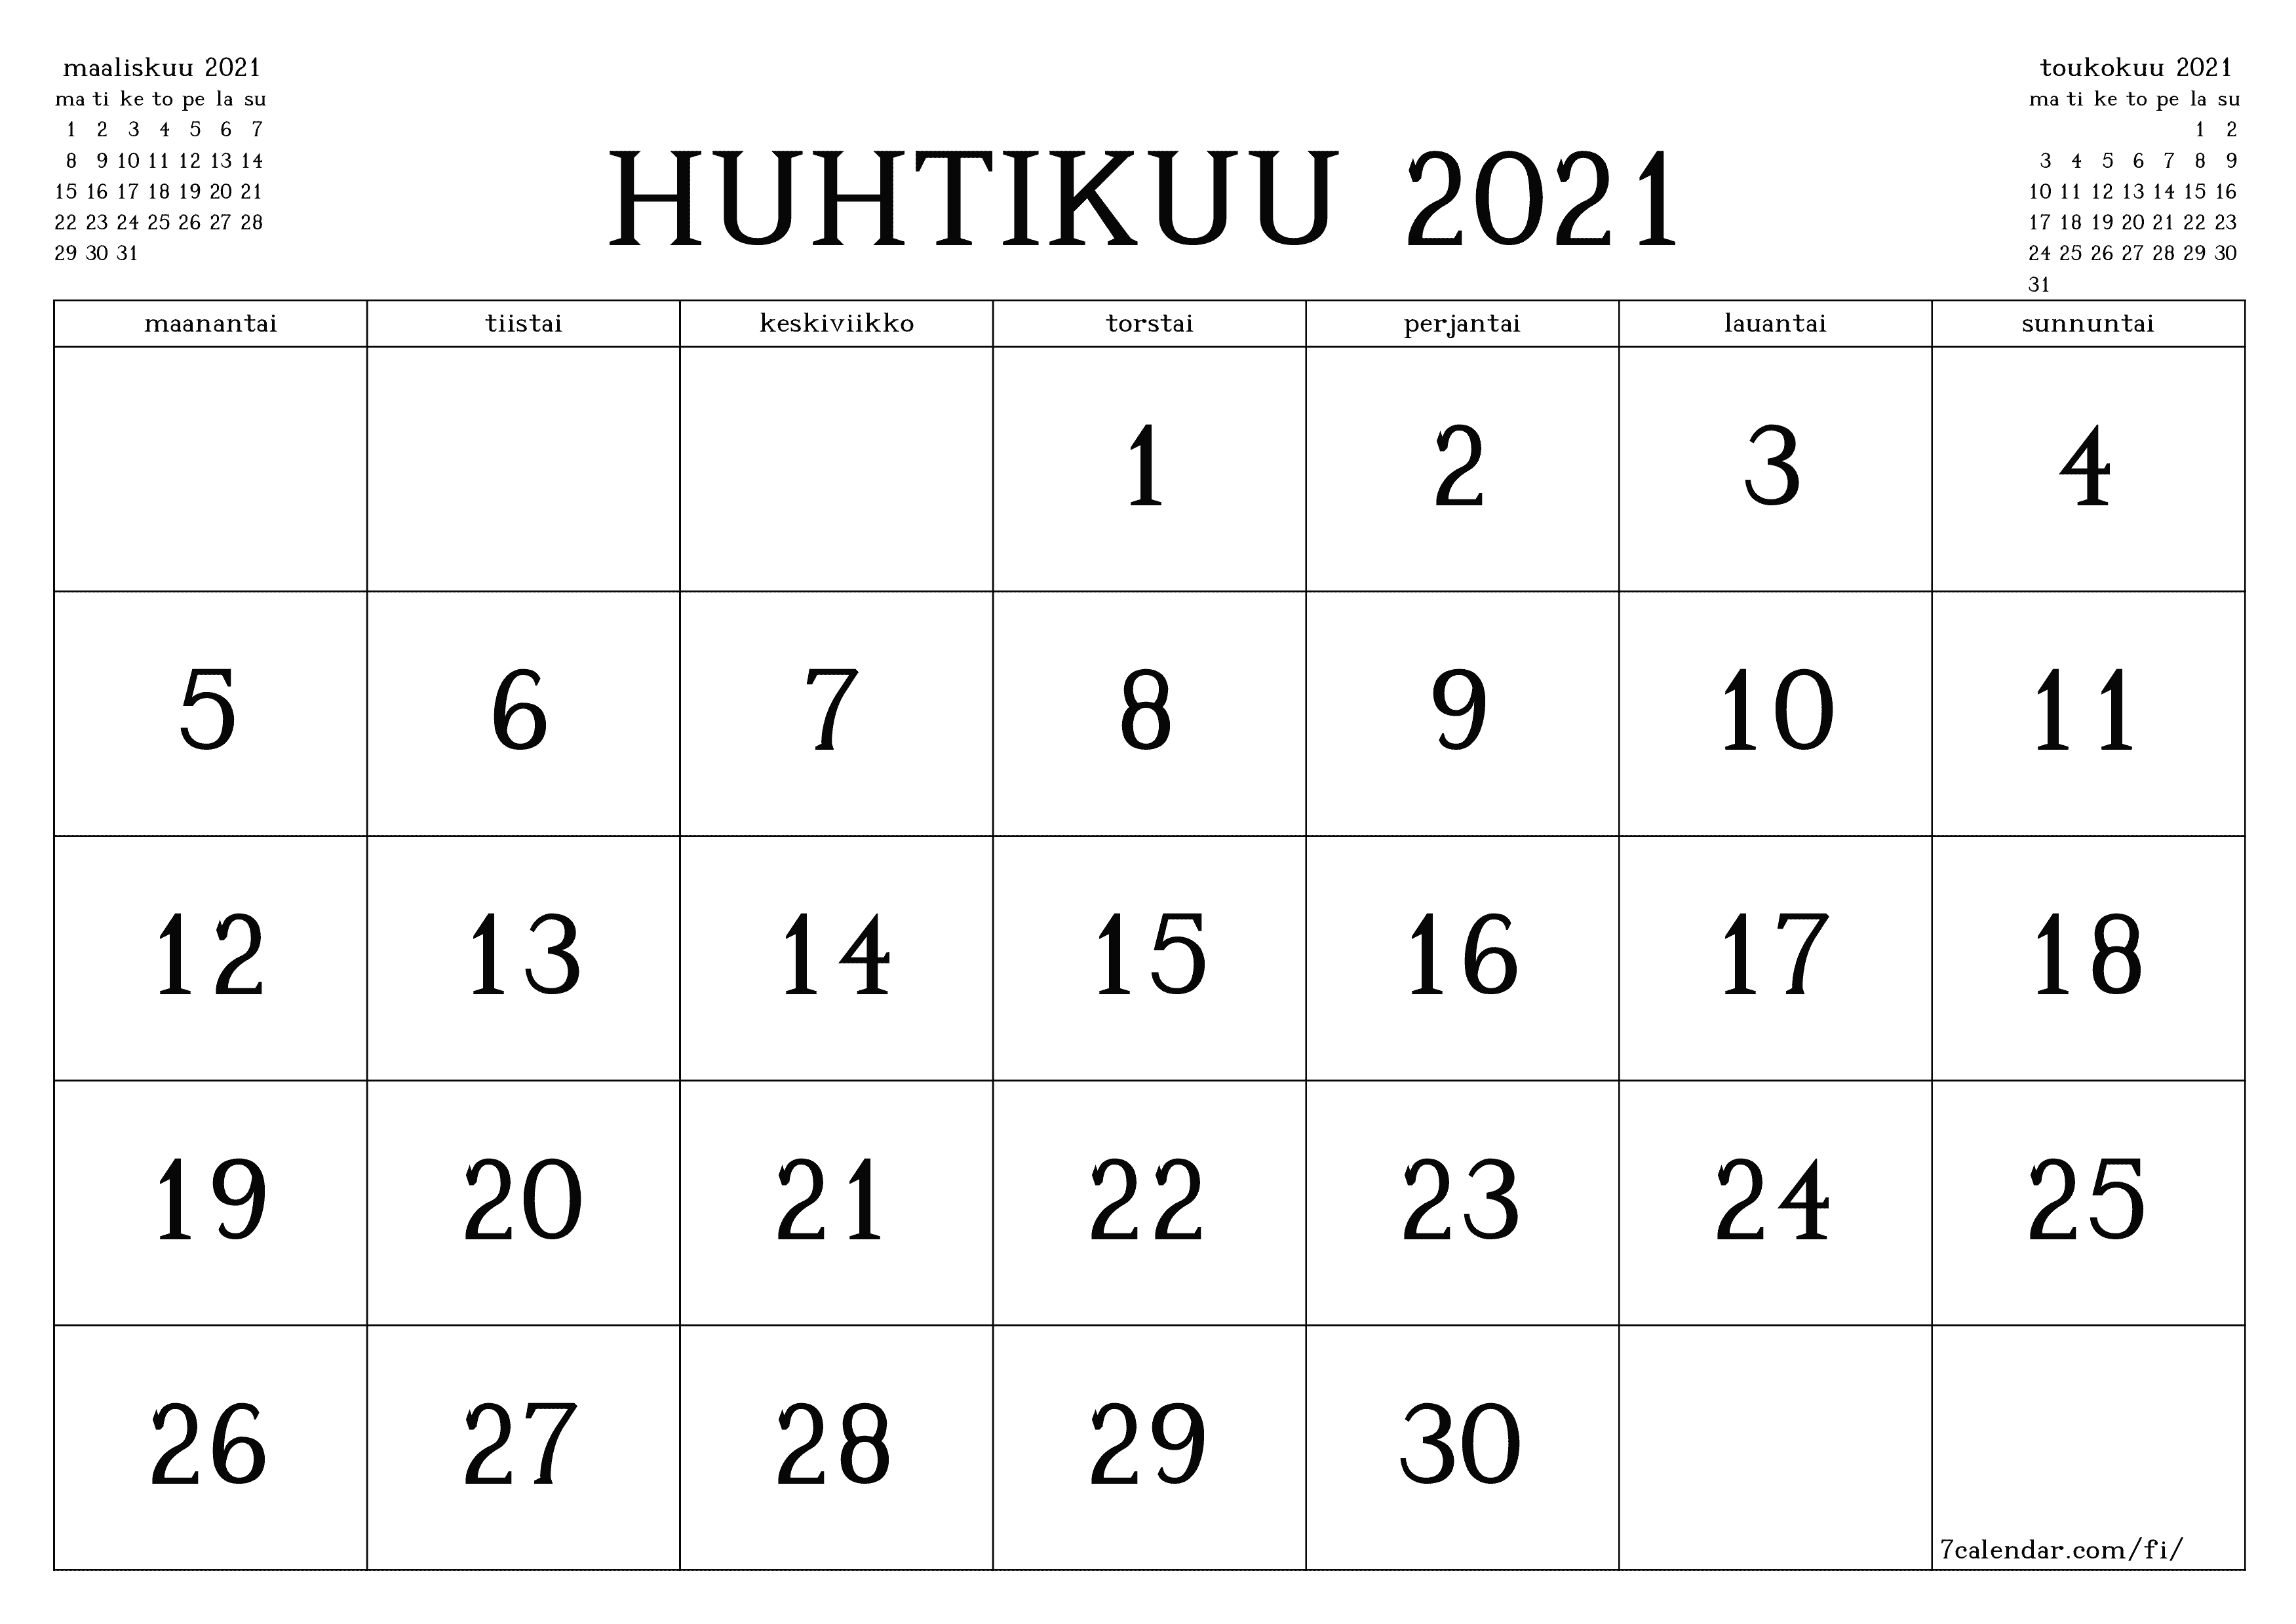 Tyhjennä kuukausittainen suunnittelija kuukaudelle huhtikuu 2021 muistiinpanoilla, tallenna ja tulosta PDF-muotoon PNG Finnish